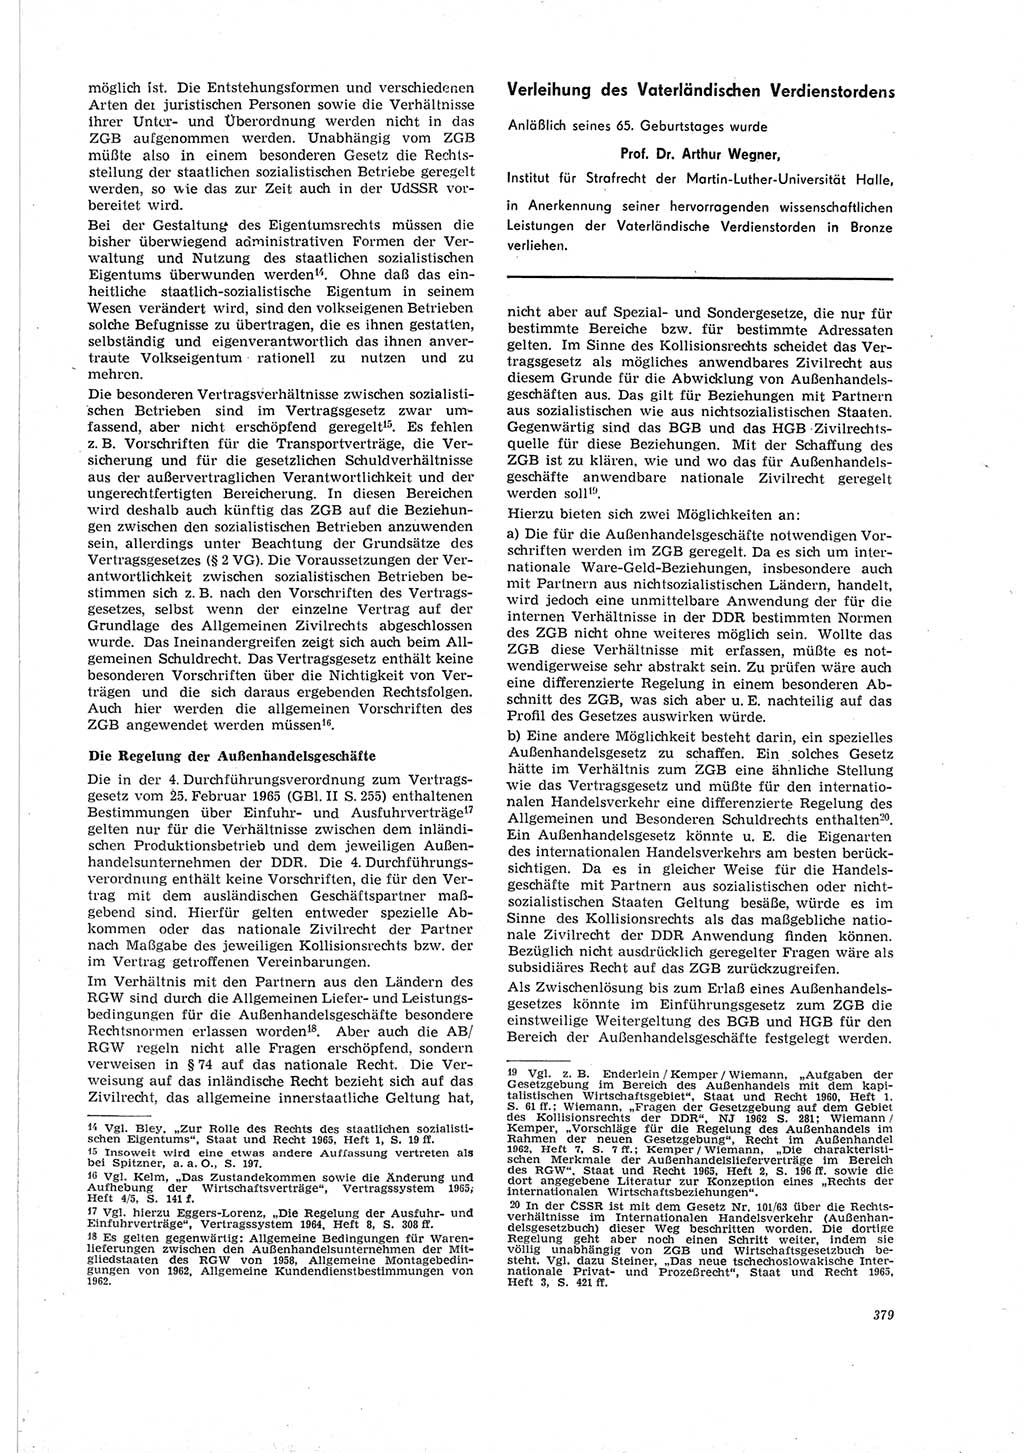 Neue Justiz (NJ), Zeitschrift für Recht und Rechtswissenschaft [Deutsche Demokratische Republik (DDR)], 19. Jahrgang 1965, Seite 379 (NJ DDR 1965, S. 379)